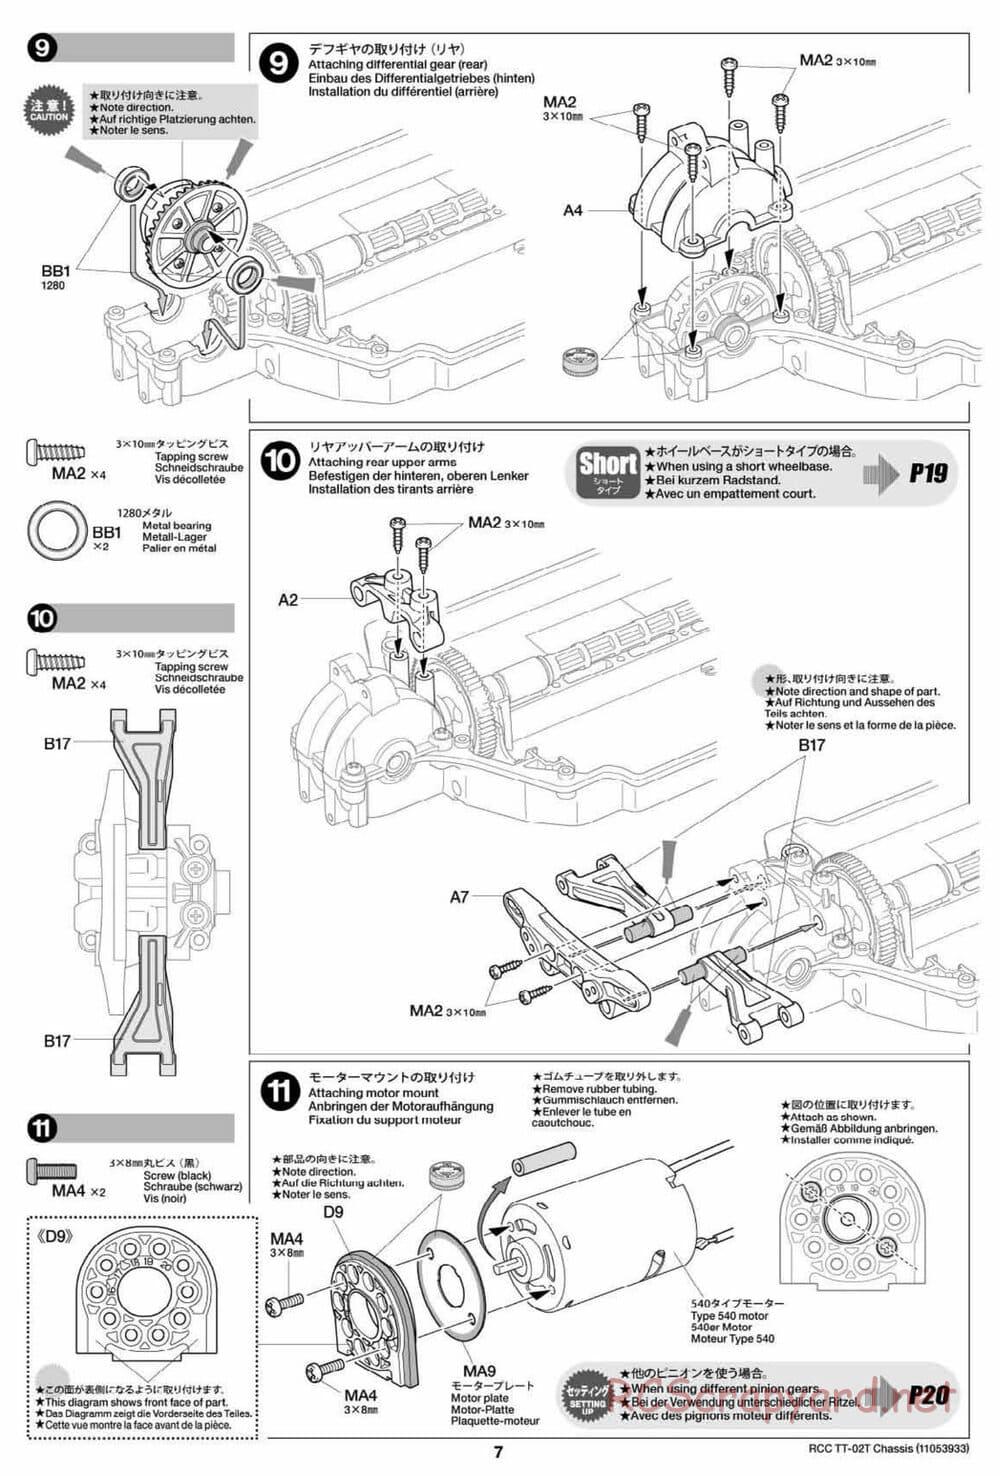 Tamiya - TT-02T Chassis - Manual - Page 8